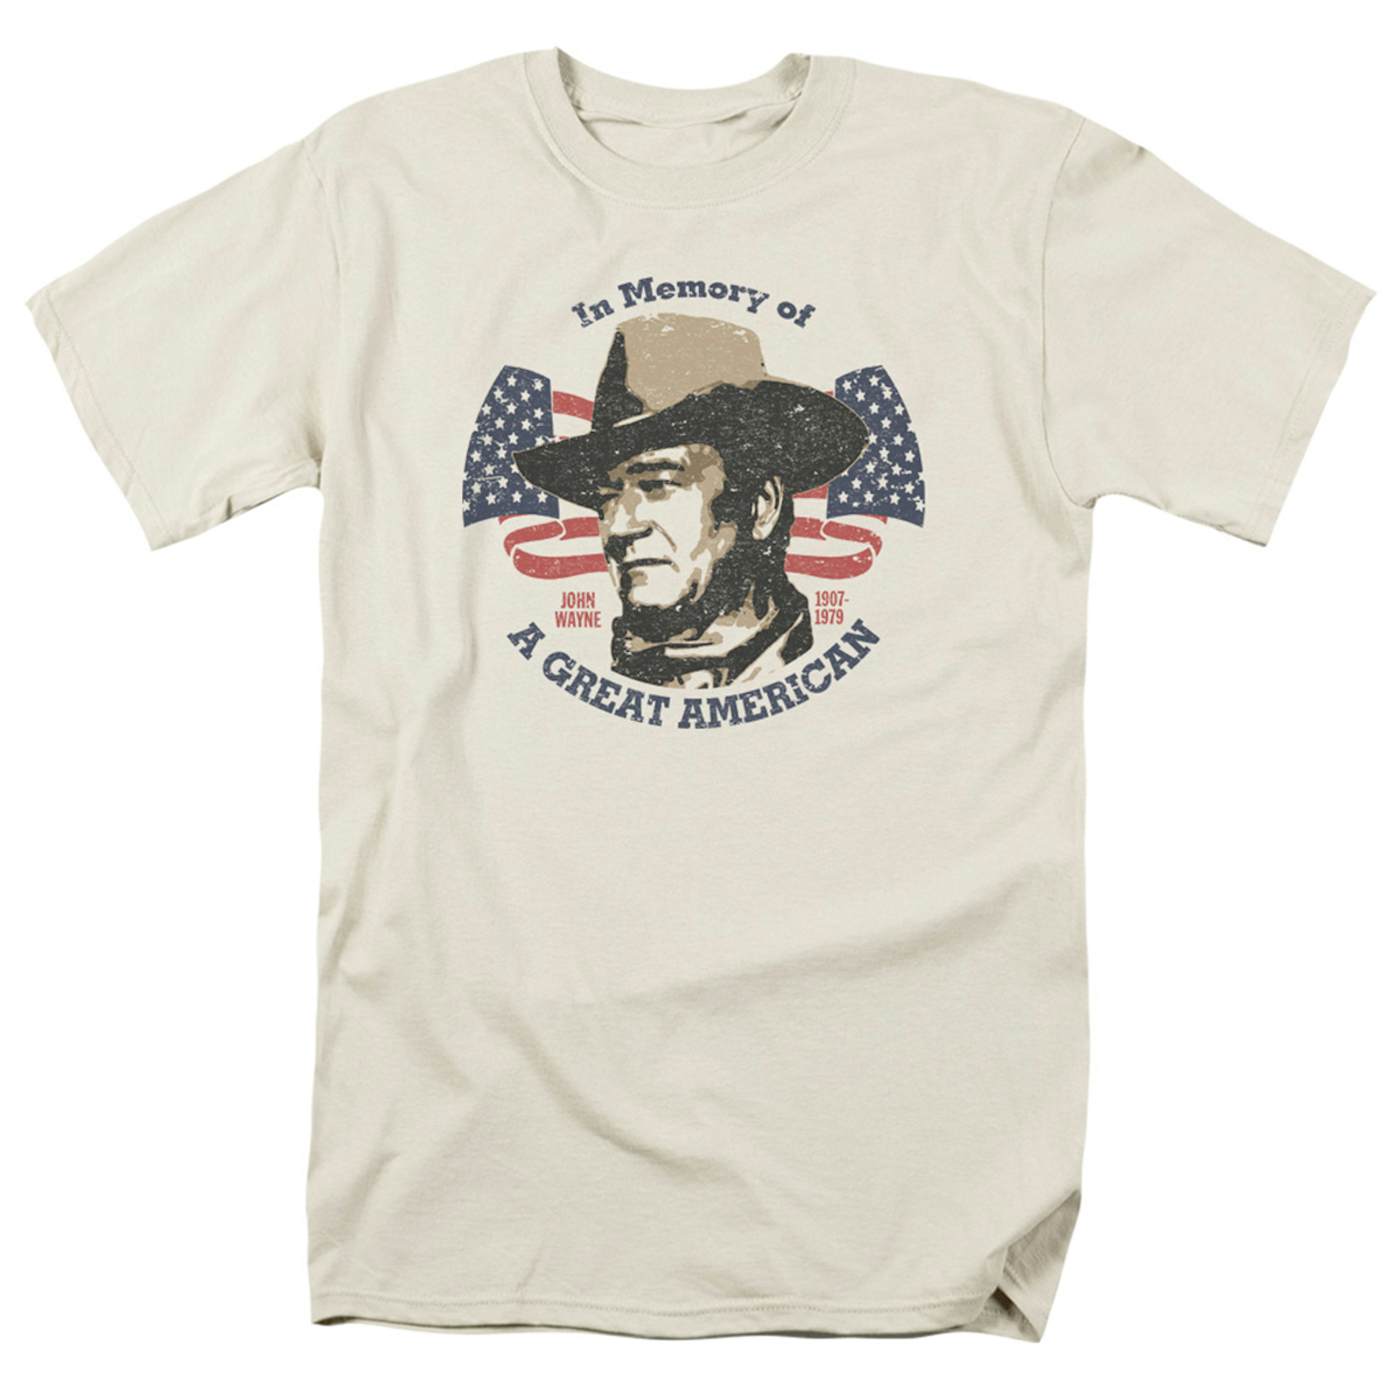 John Wayne Great American T-Shirt